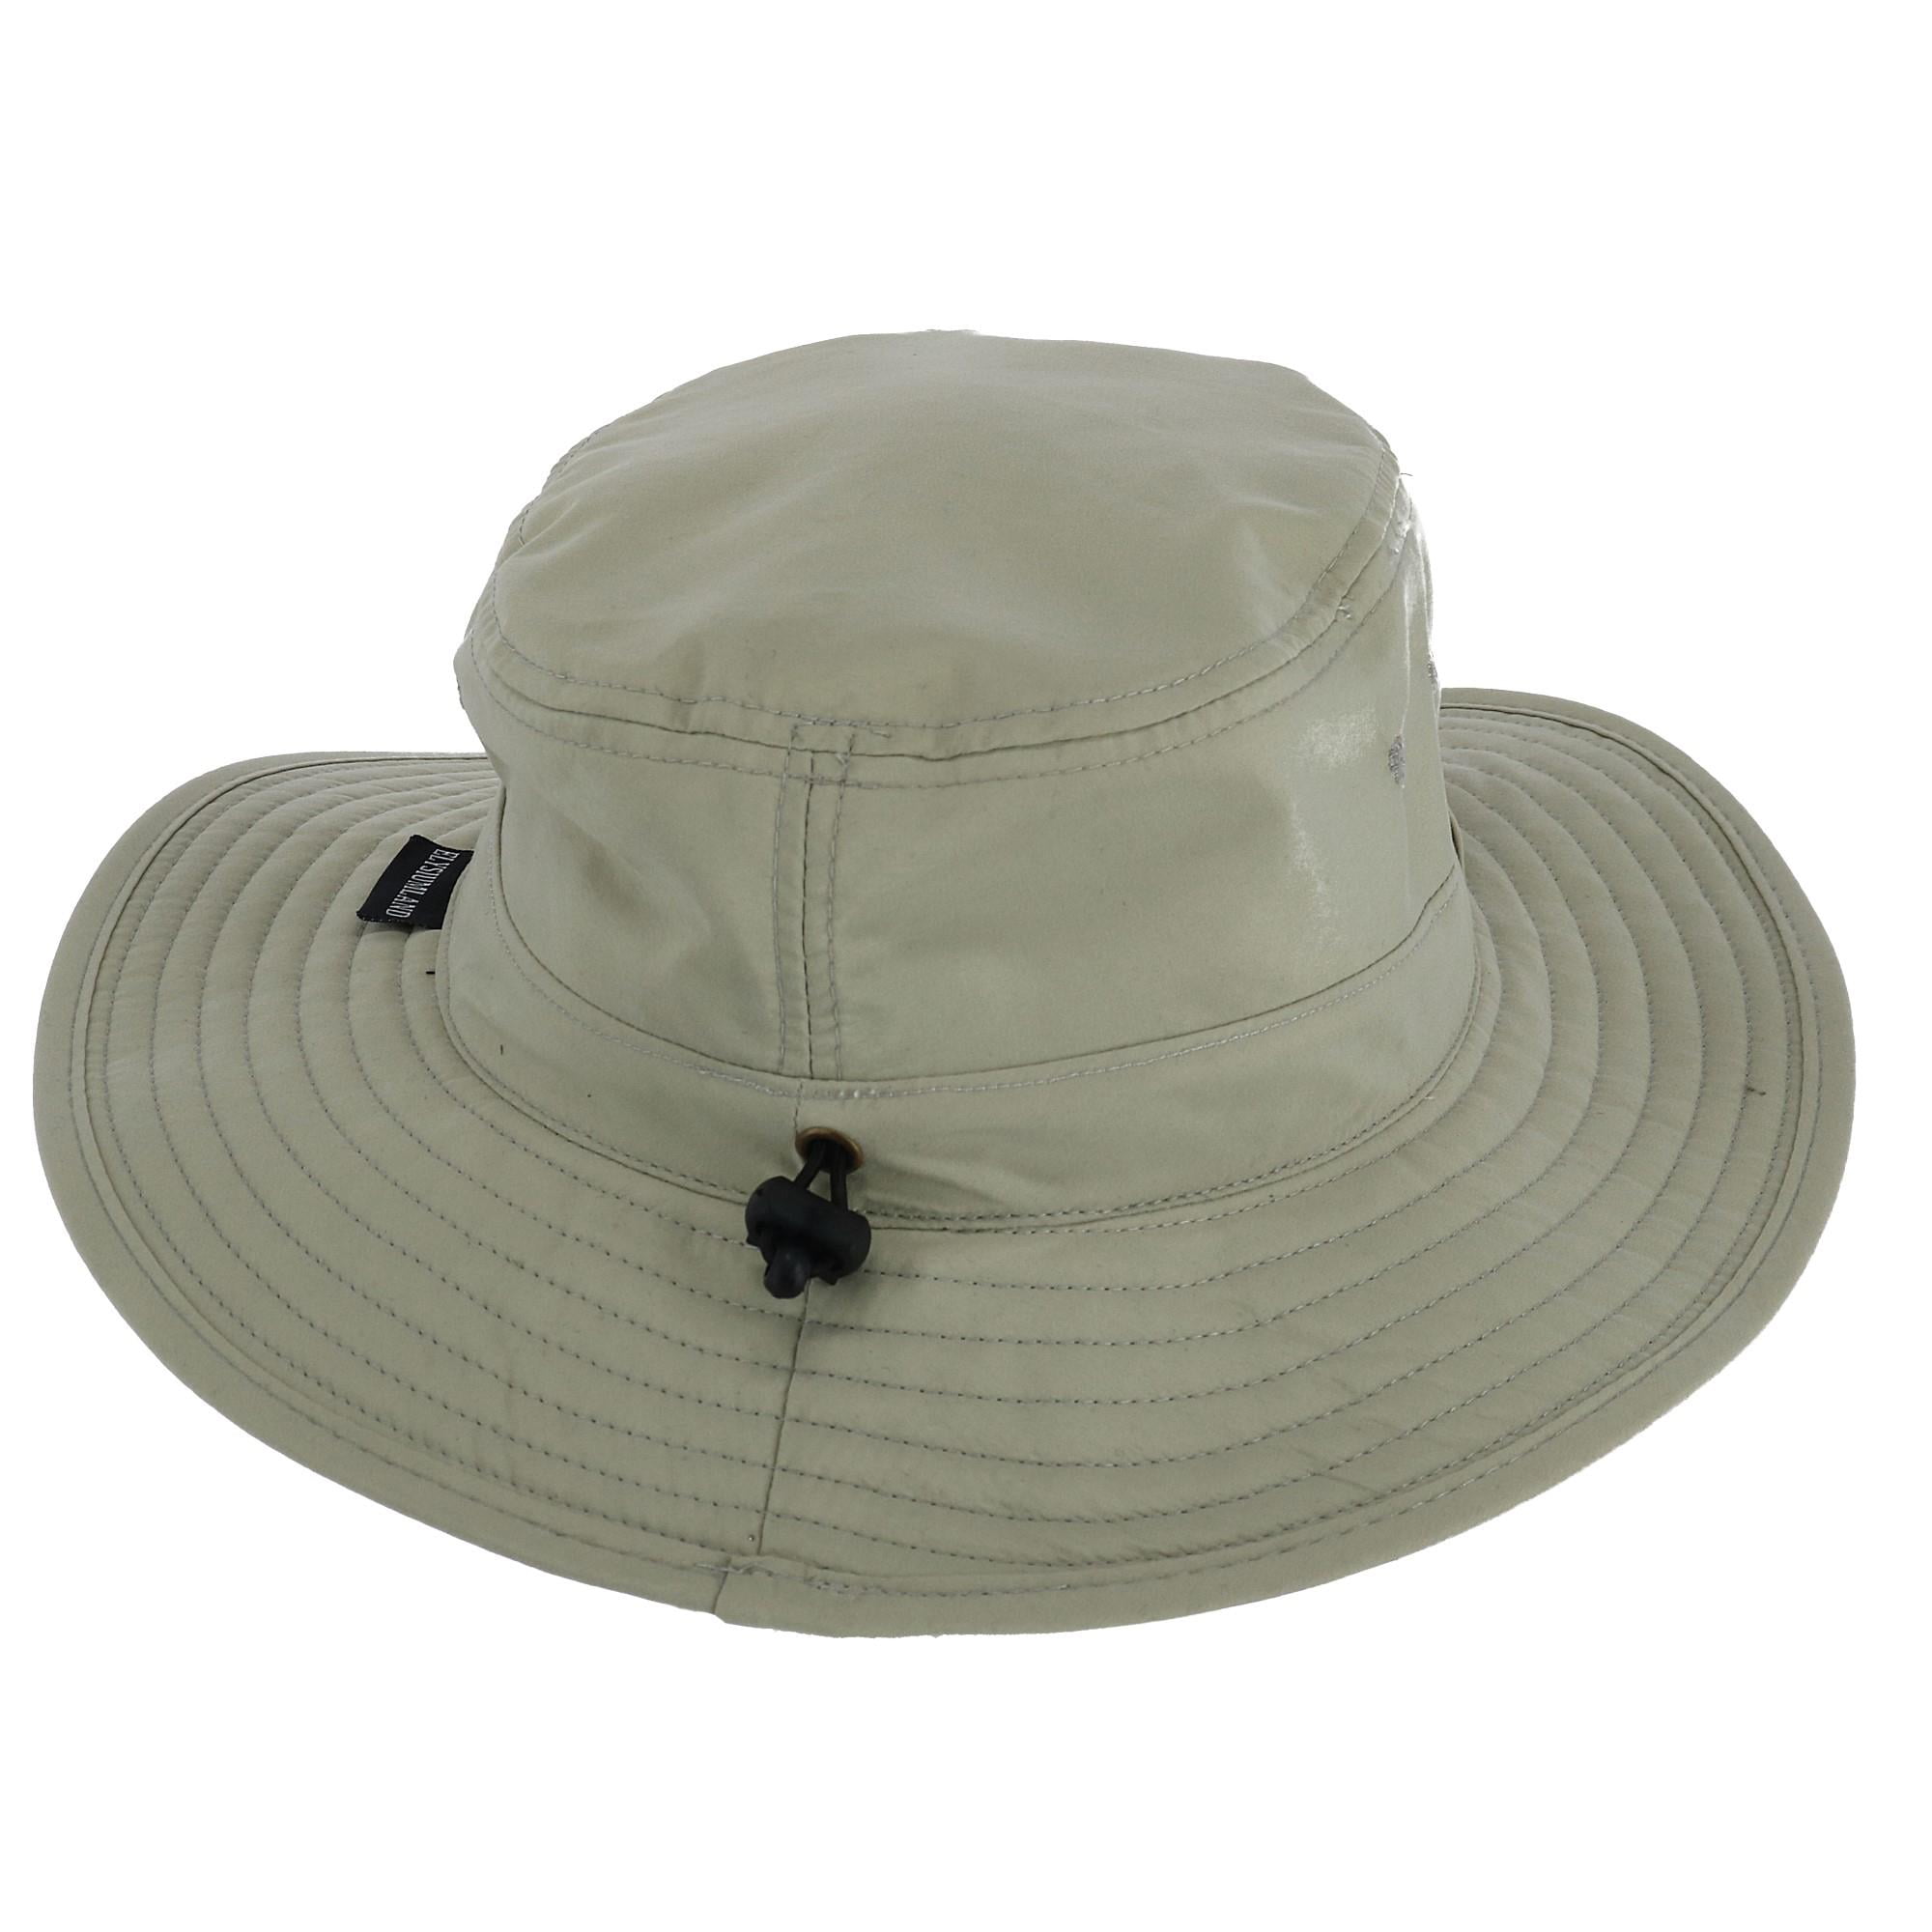 Elysiumland Men's Water Resistant Boonie Hat with Sunglasses Loop ...